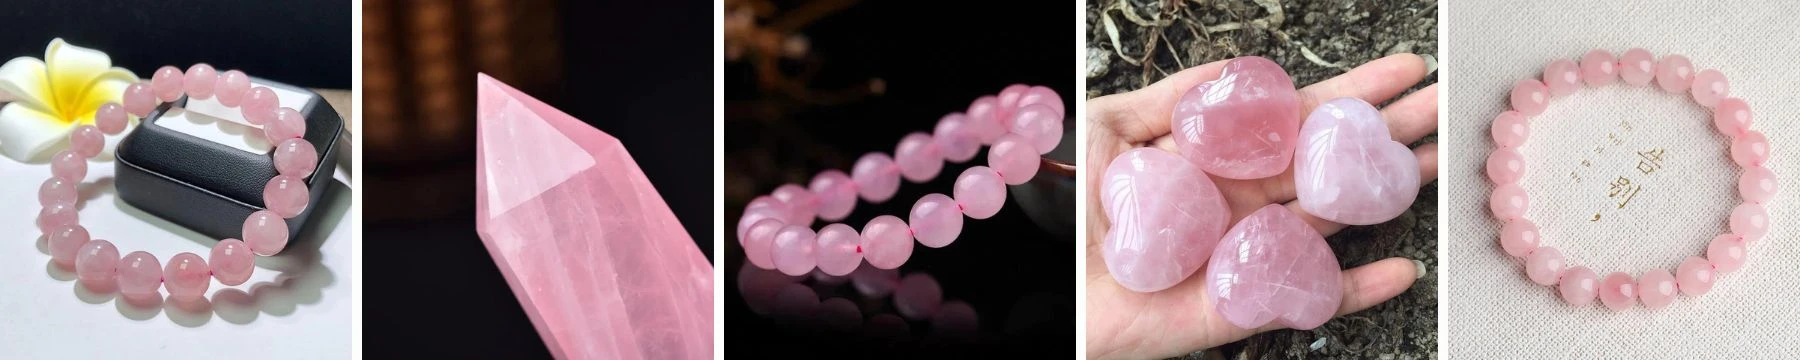 pink gemstones and crystals - rose quartz